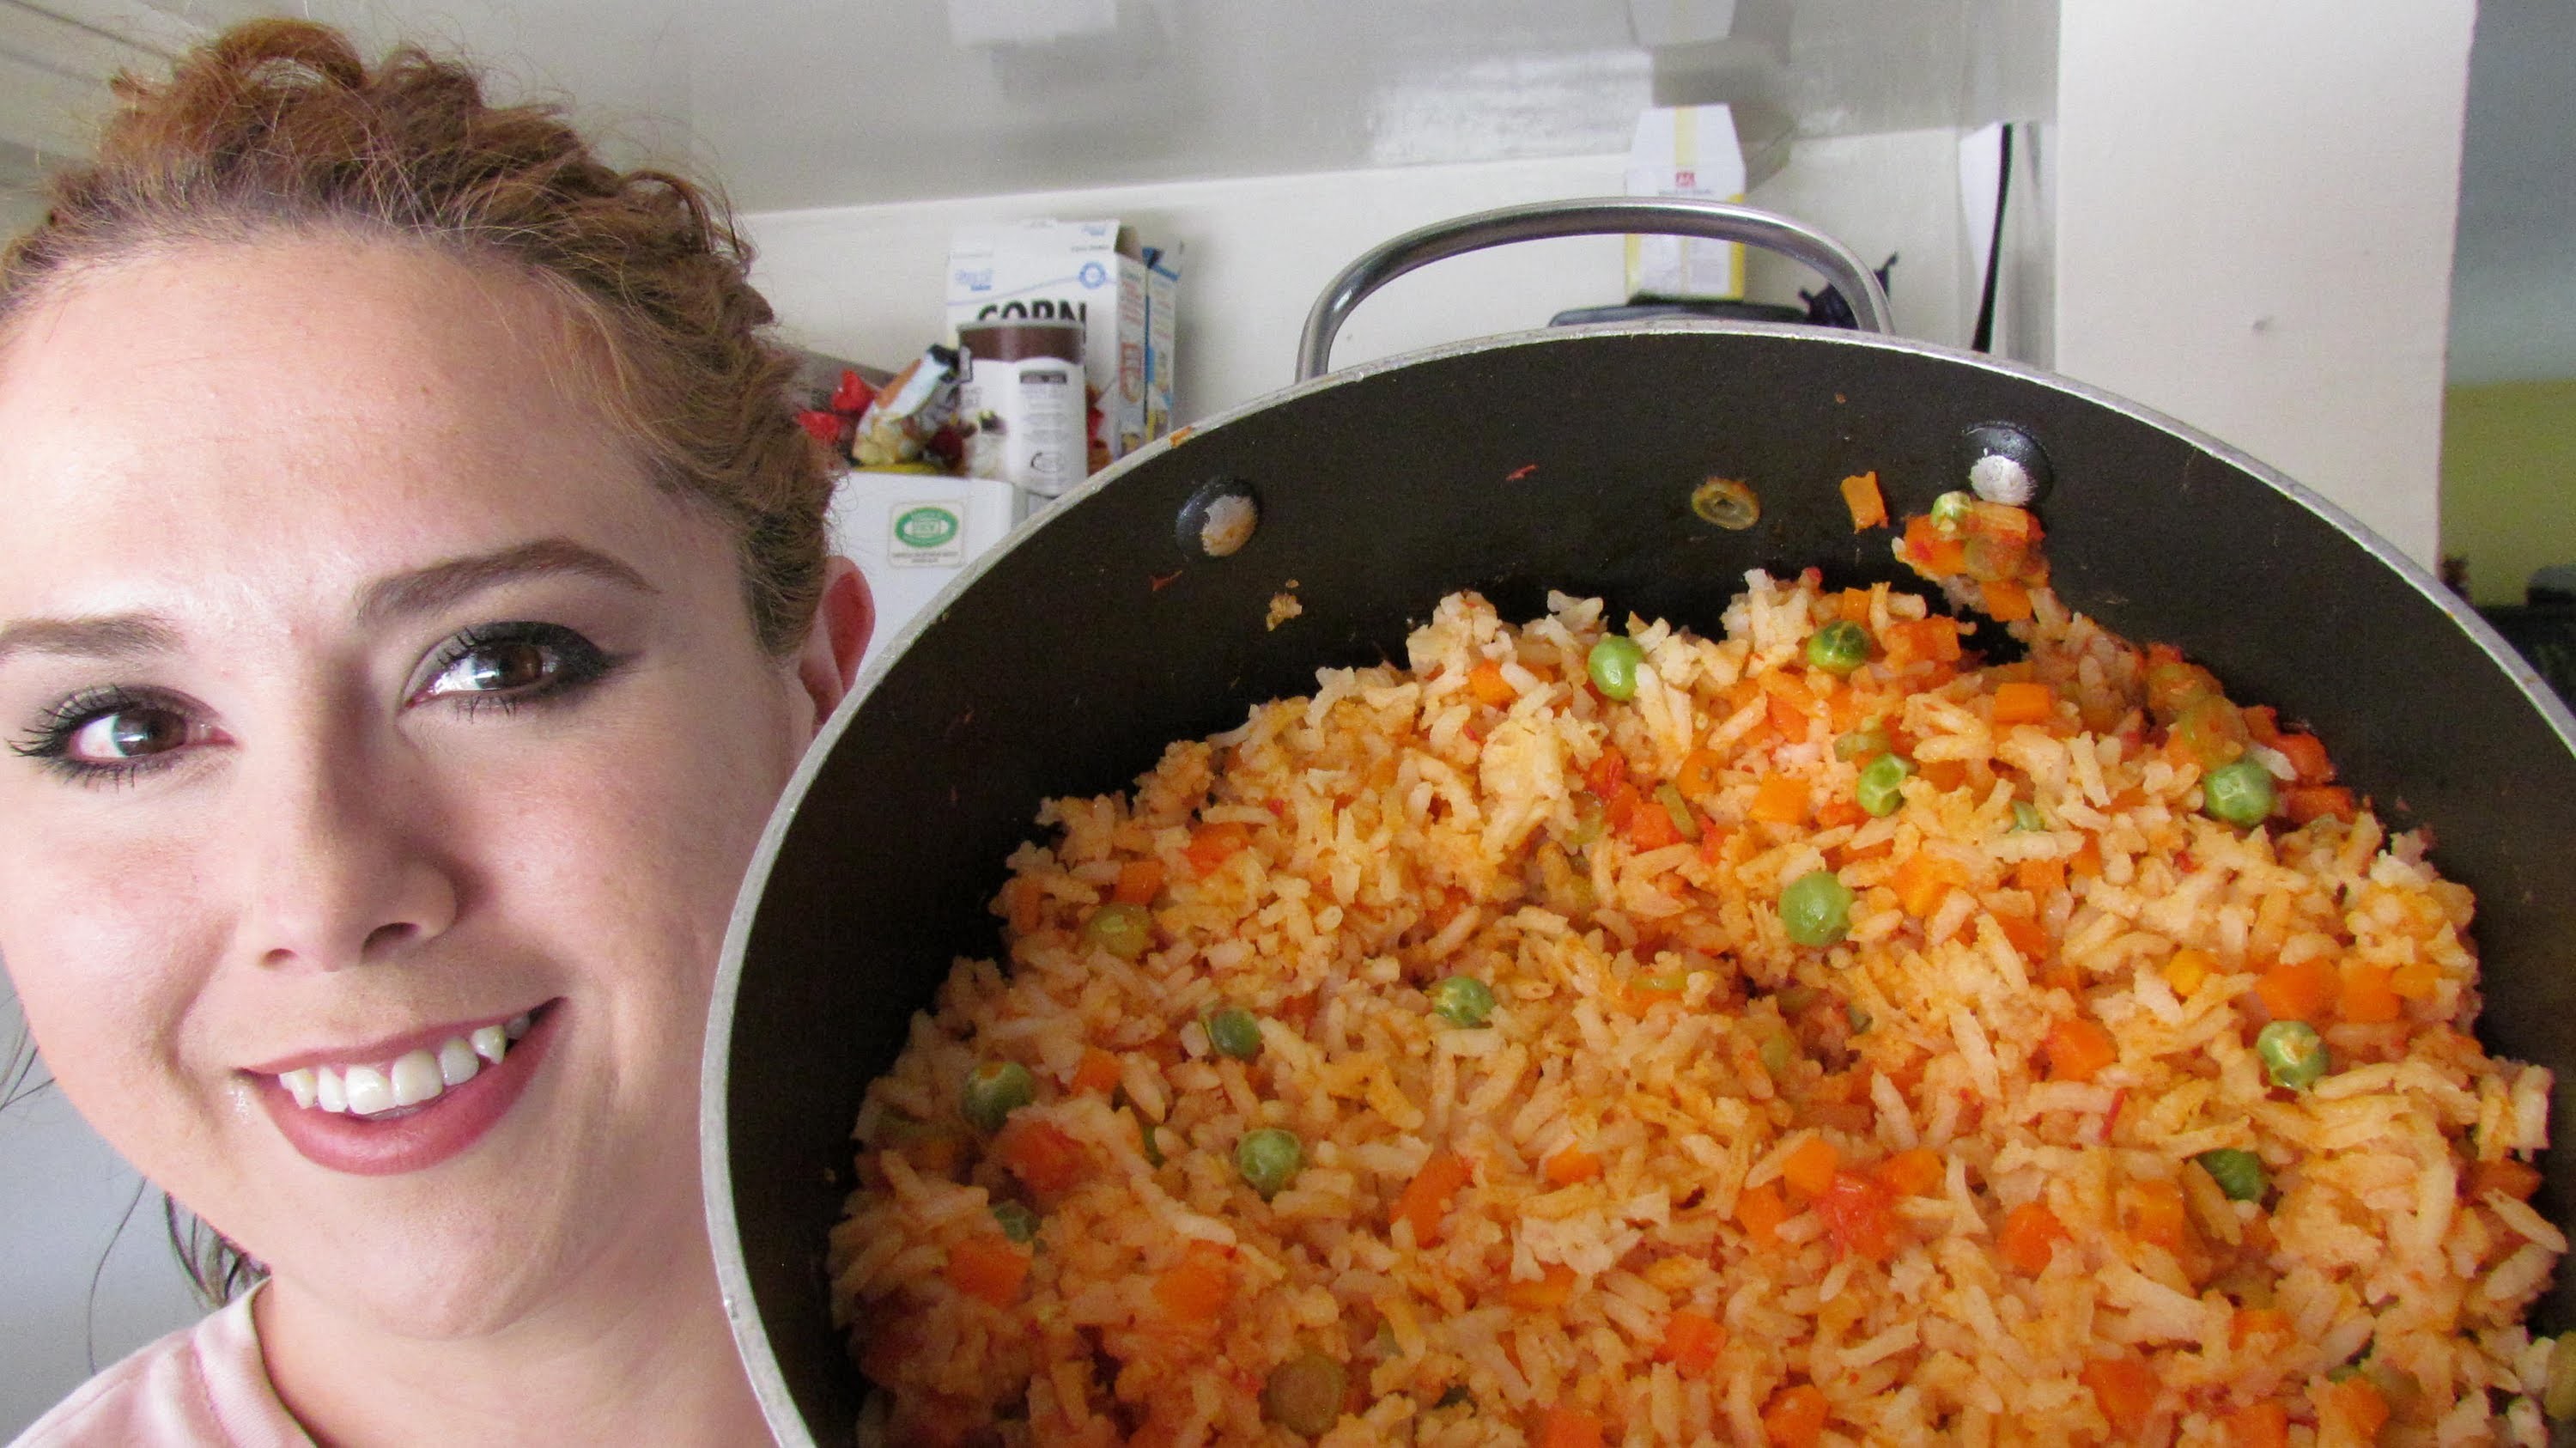 Cómo hacer arroz rojo con medidas exactas? no se bate, no se pega!